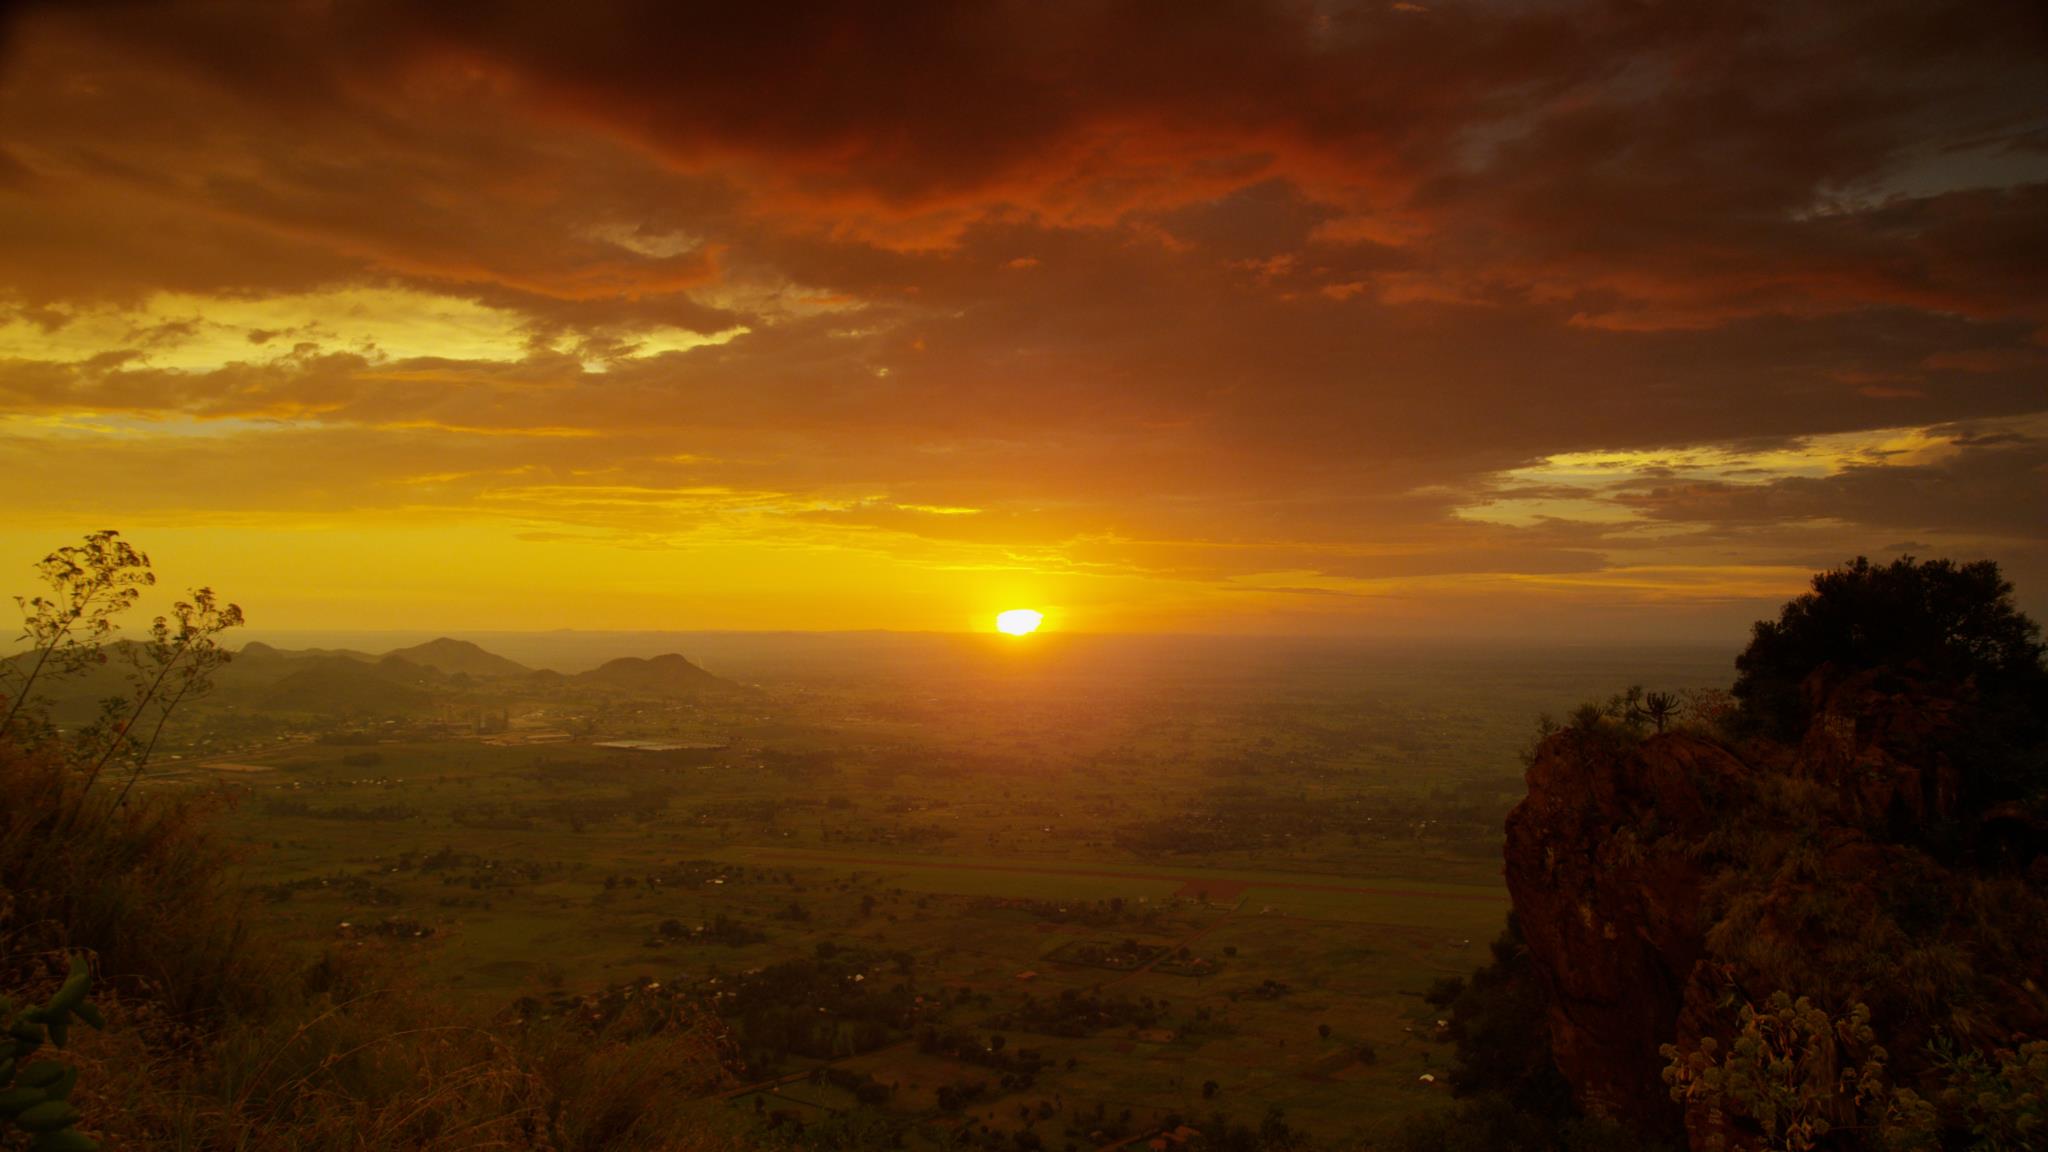 Sunset in Tororo, Uganda.